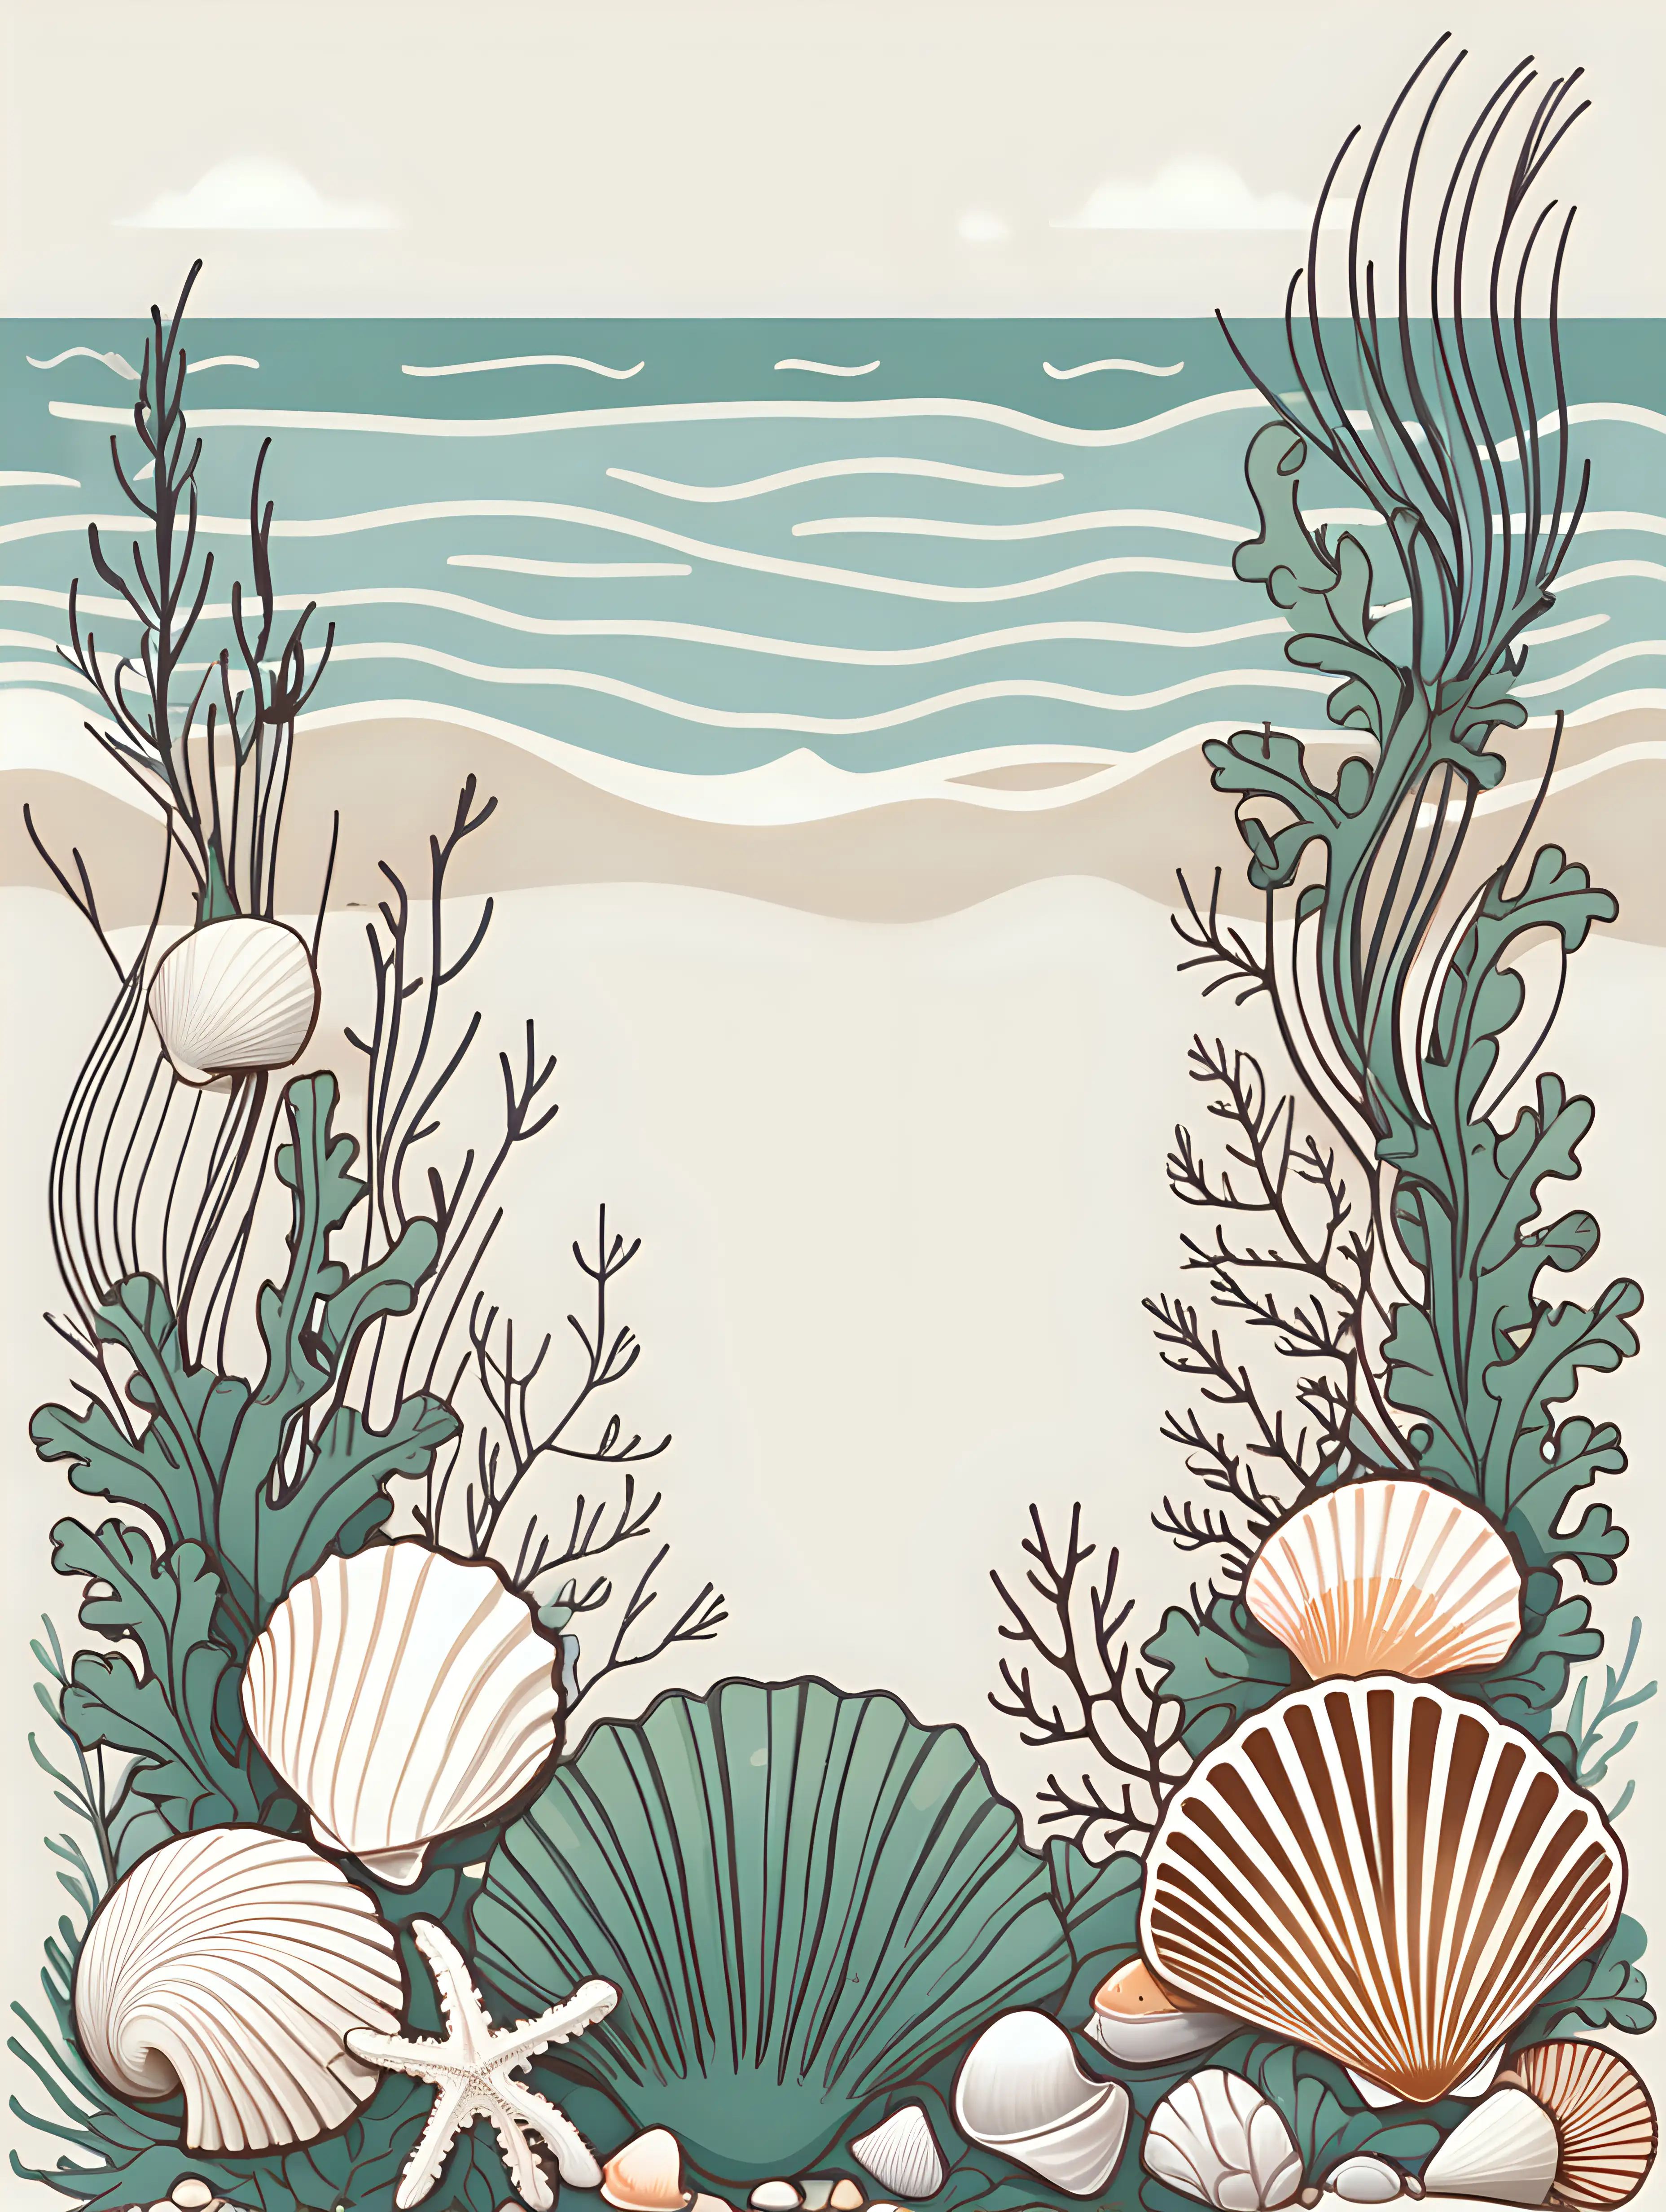 Seaweed and Seashells in Serene Flatline Illustration